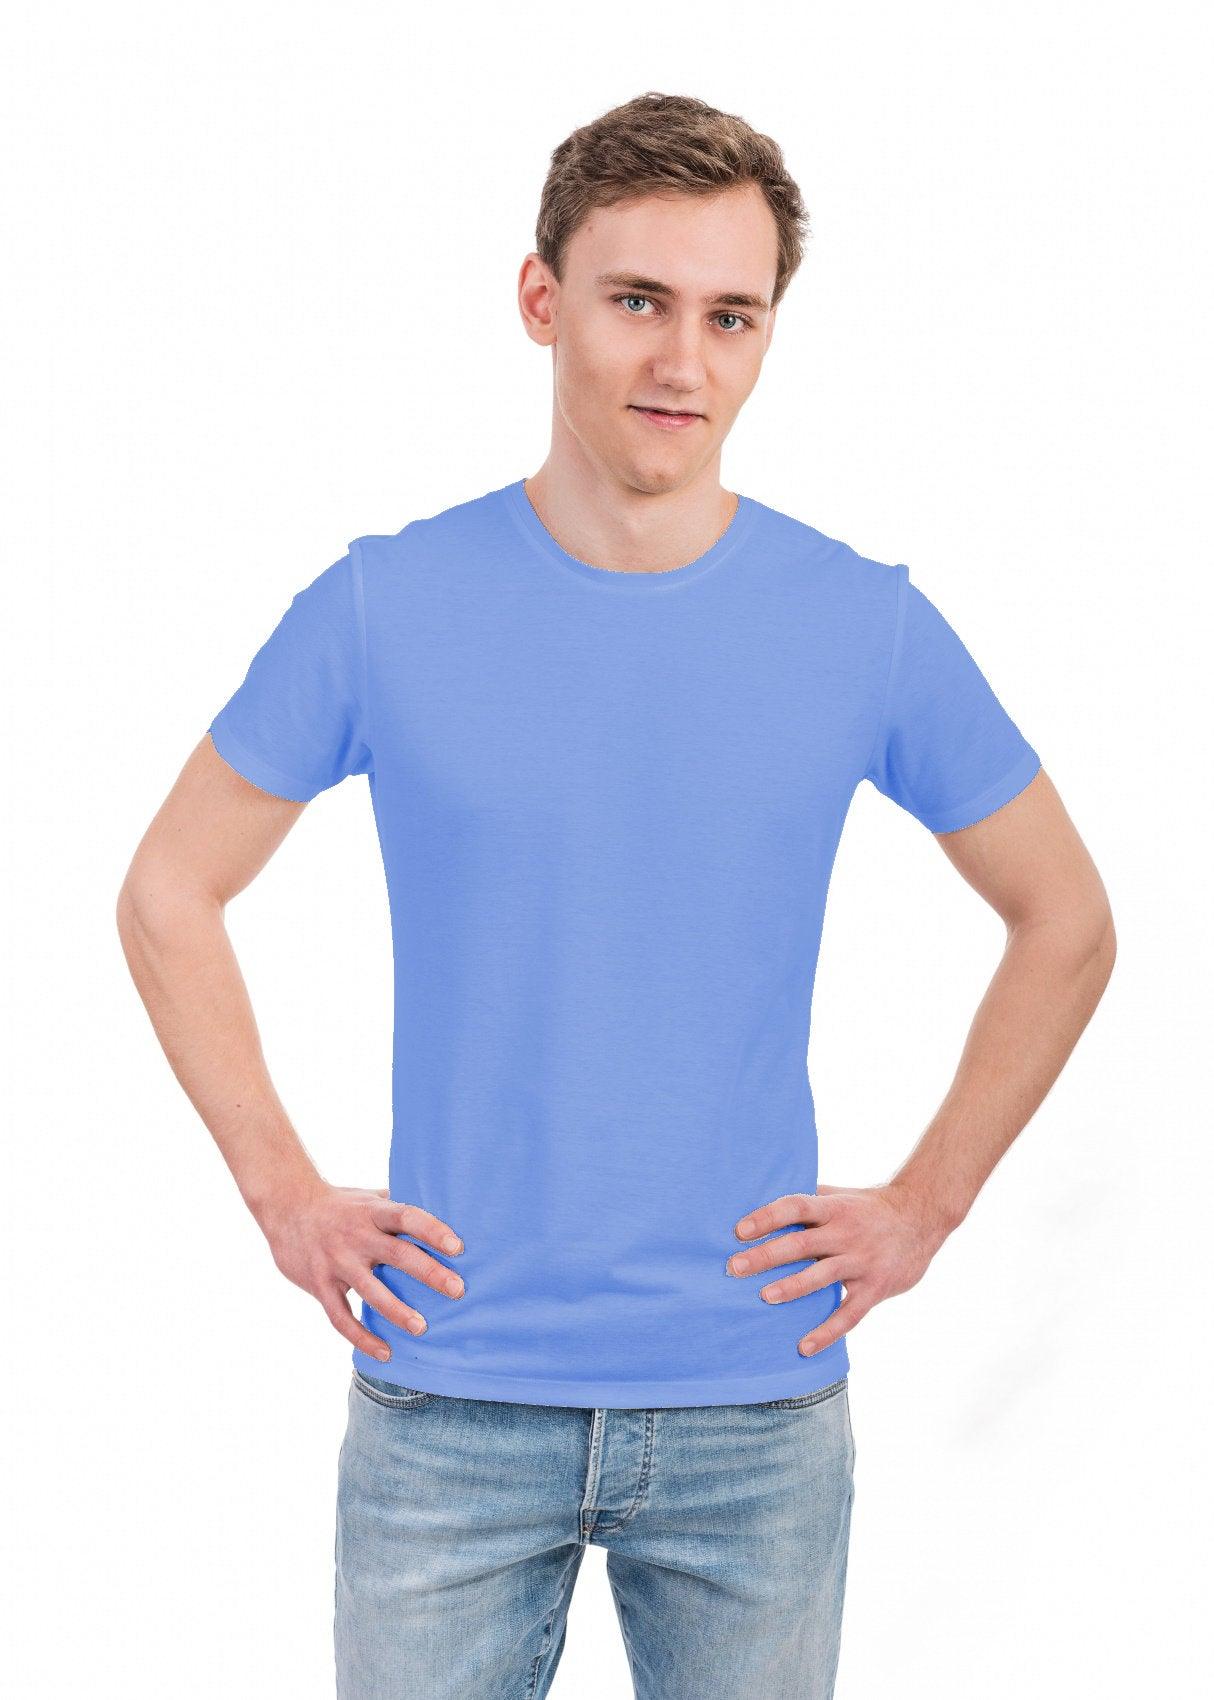 Smarttan sinine läbipäevituv meeste T-särk - Smarttan